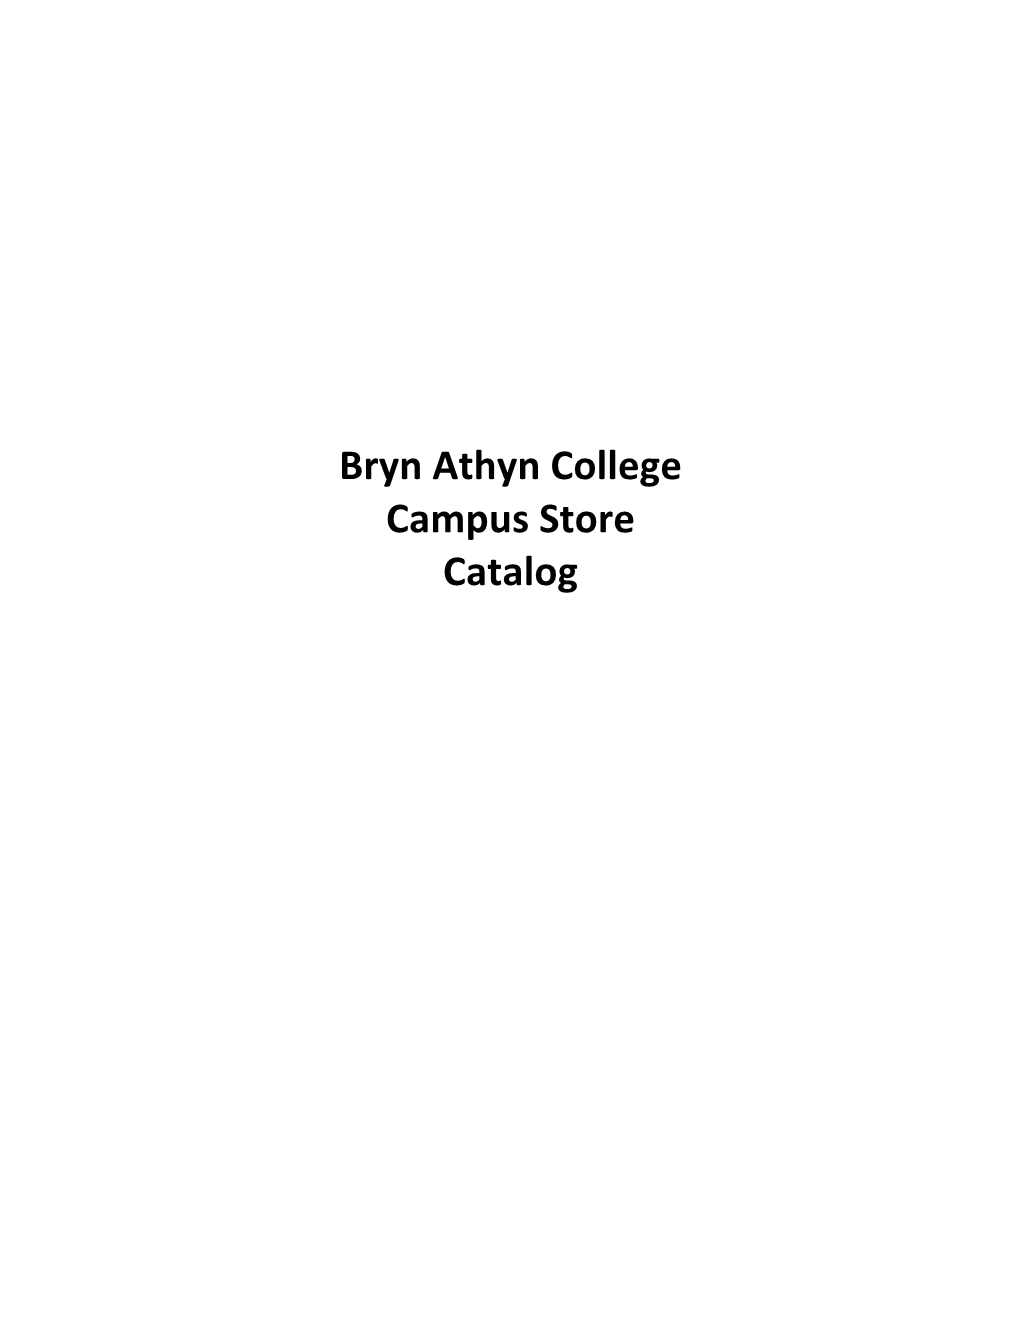 Bryn Athyn College Campus Store Catalog